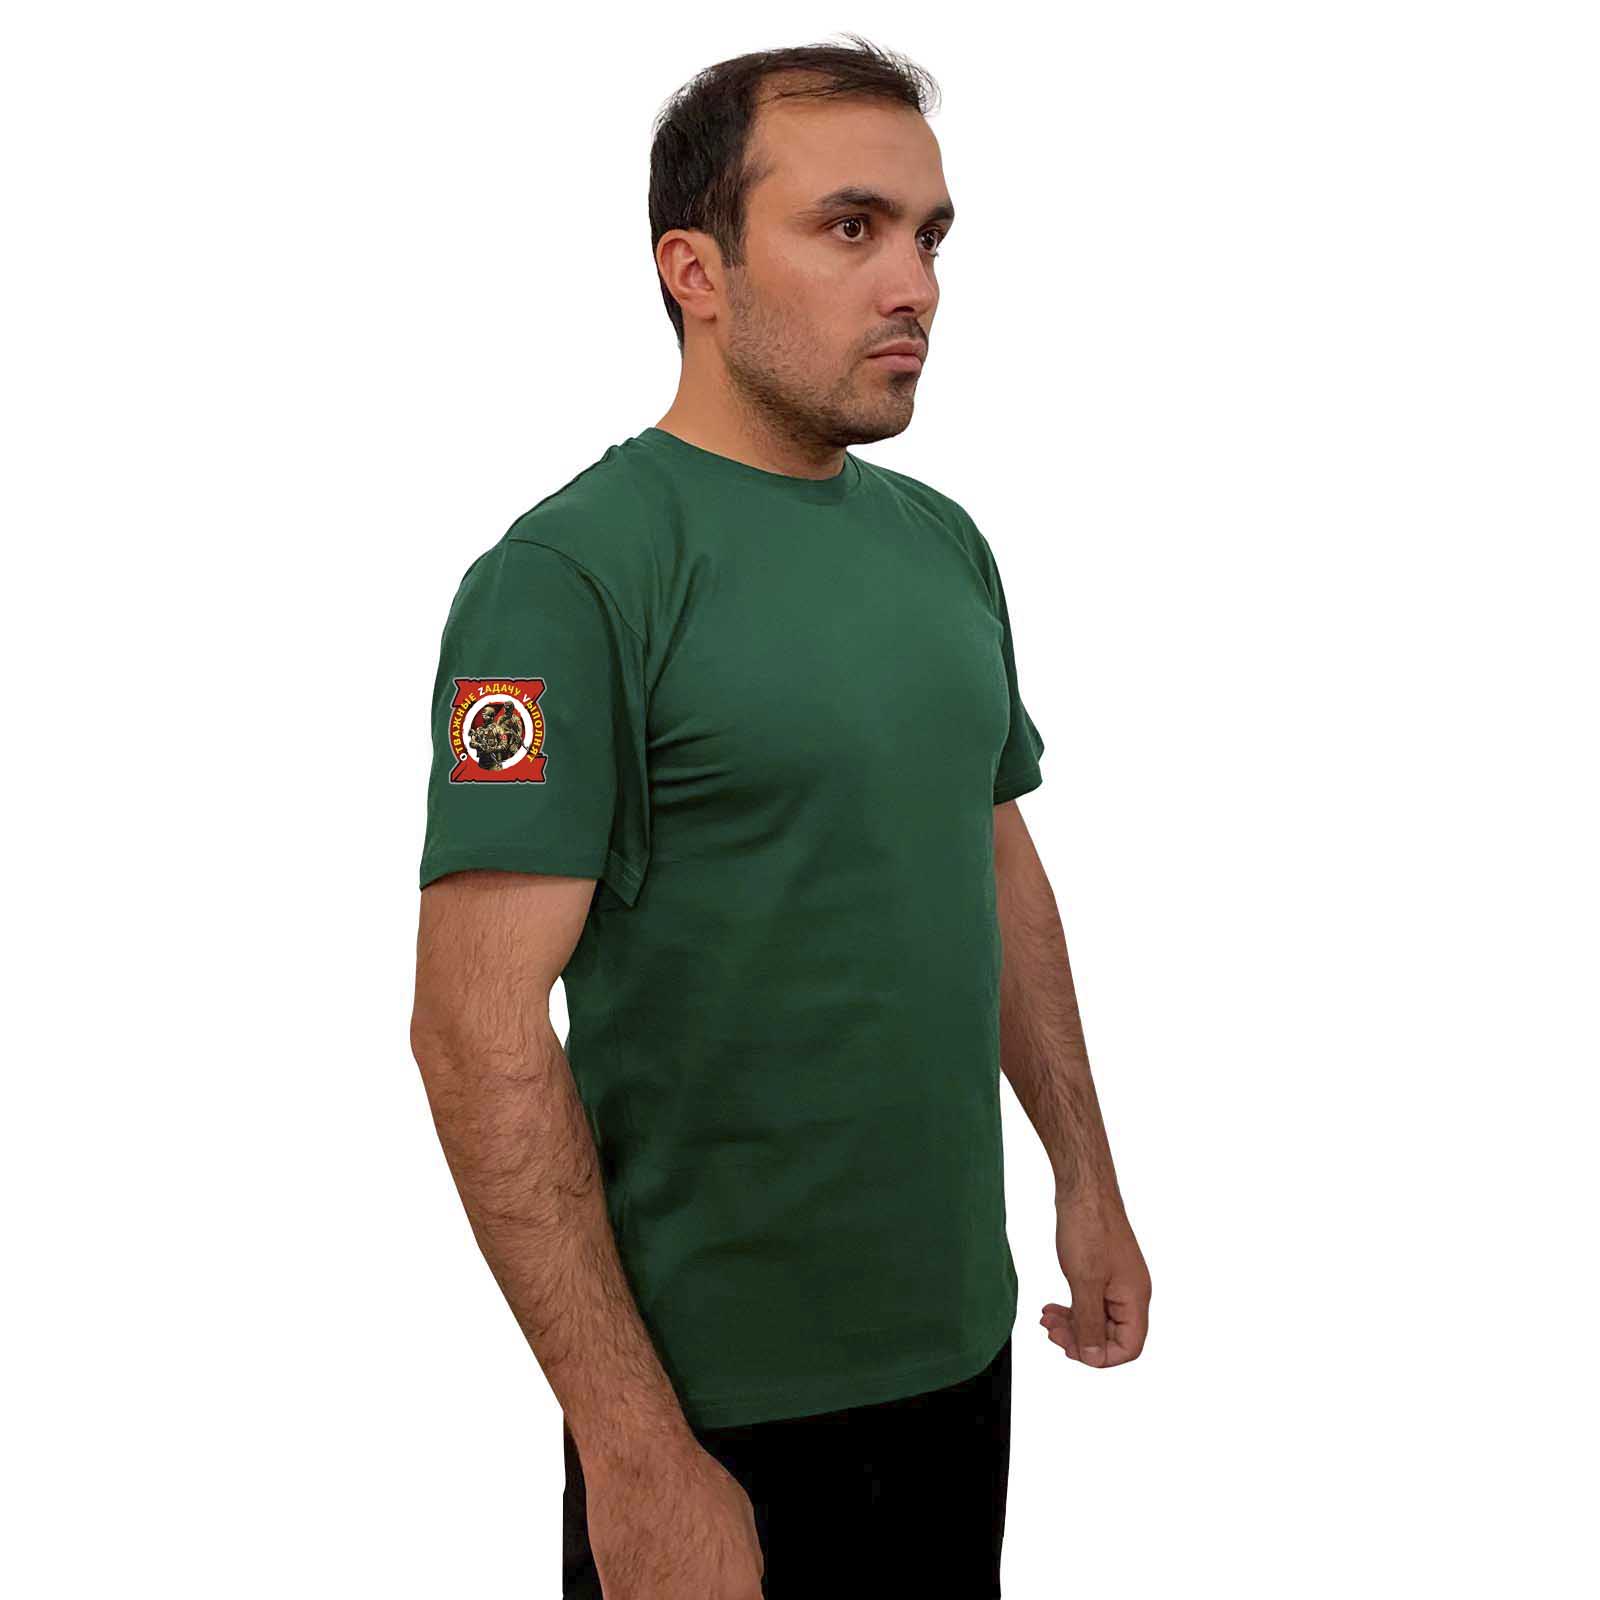  Зелёная футболка с термопринтом "Отважные Zадачу Vыполнят" на рукаве